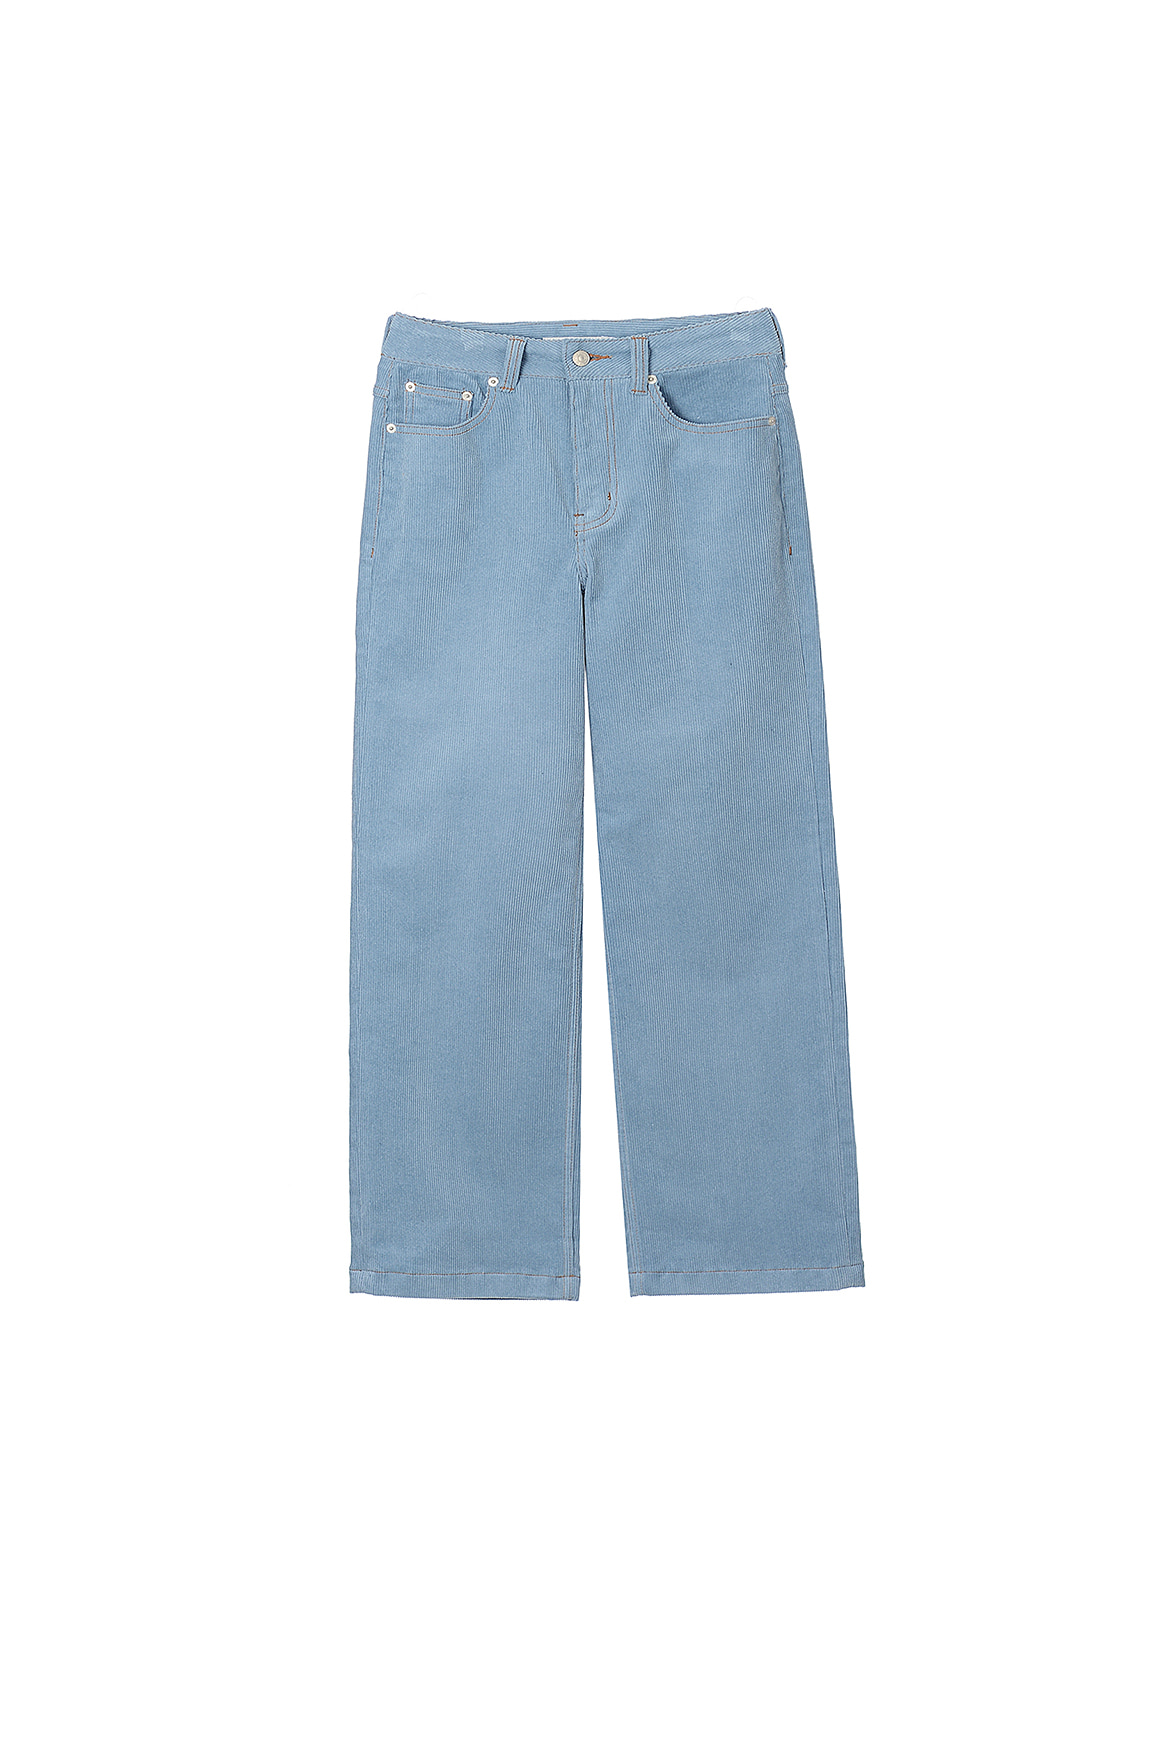 Vintage Corduroy Slim Pants